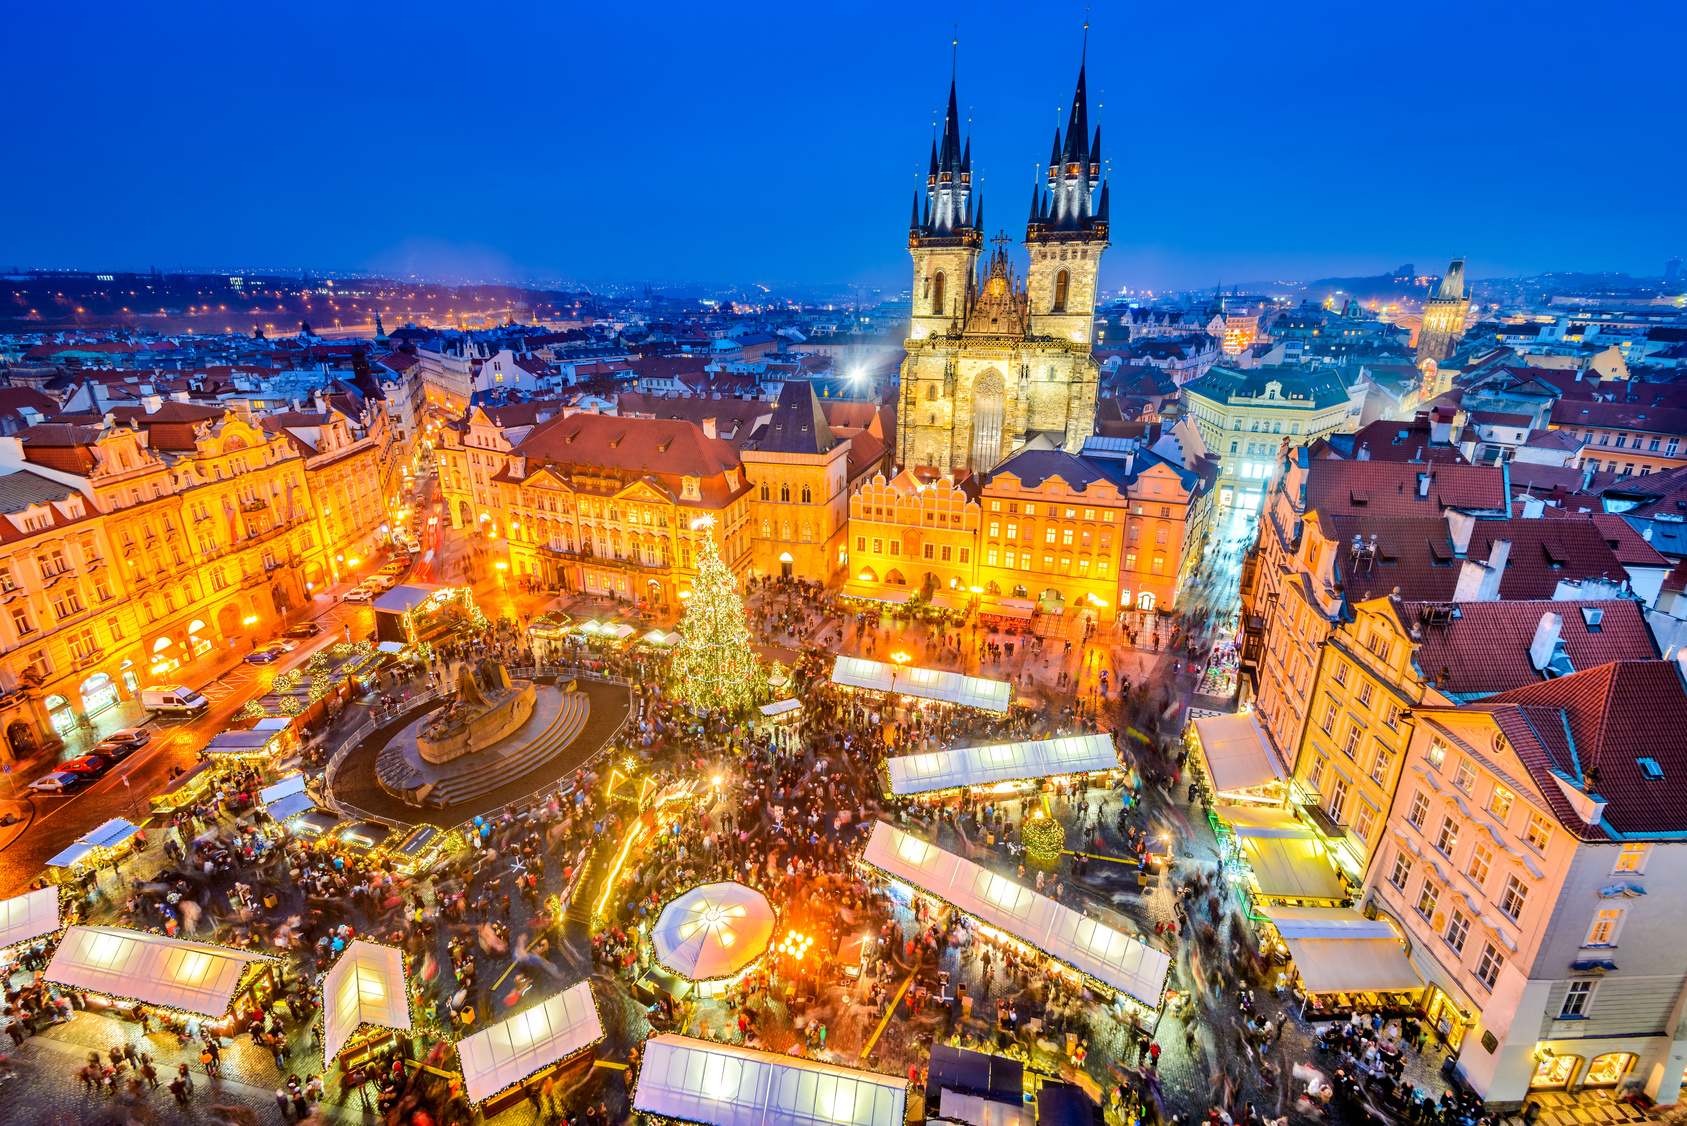 Weihnachten in Prag: Die schönsten Weihnachtsmärkte und Plätze - Prag.de